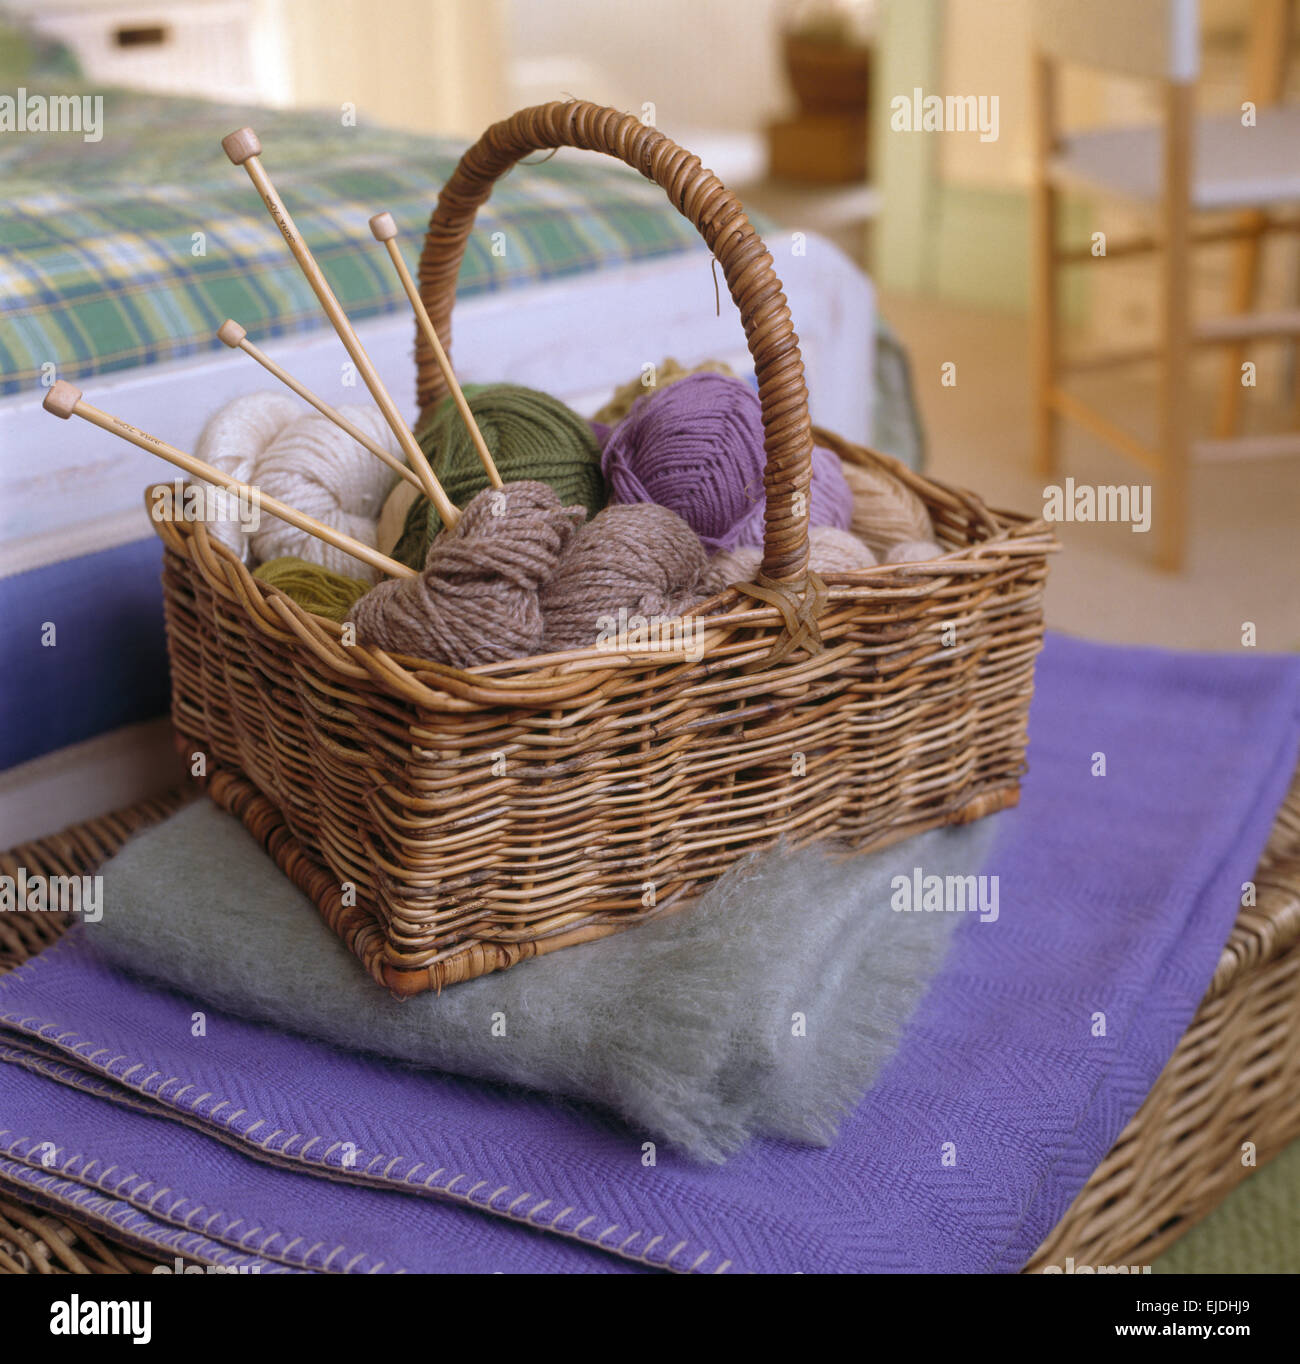 Panier de laine à tricoter sur l'écharpe en mohair et couverture pourpre Banque D'Images